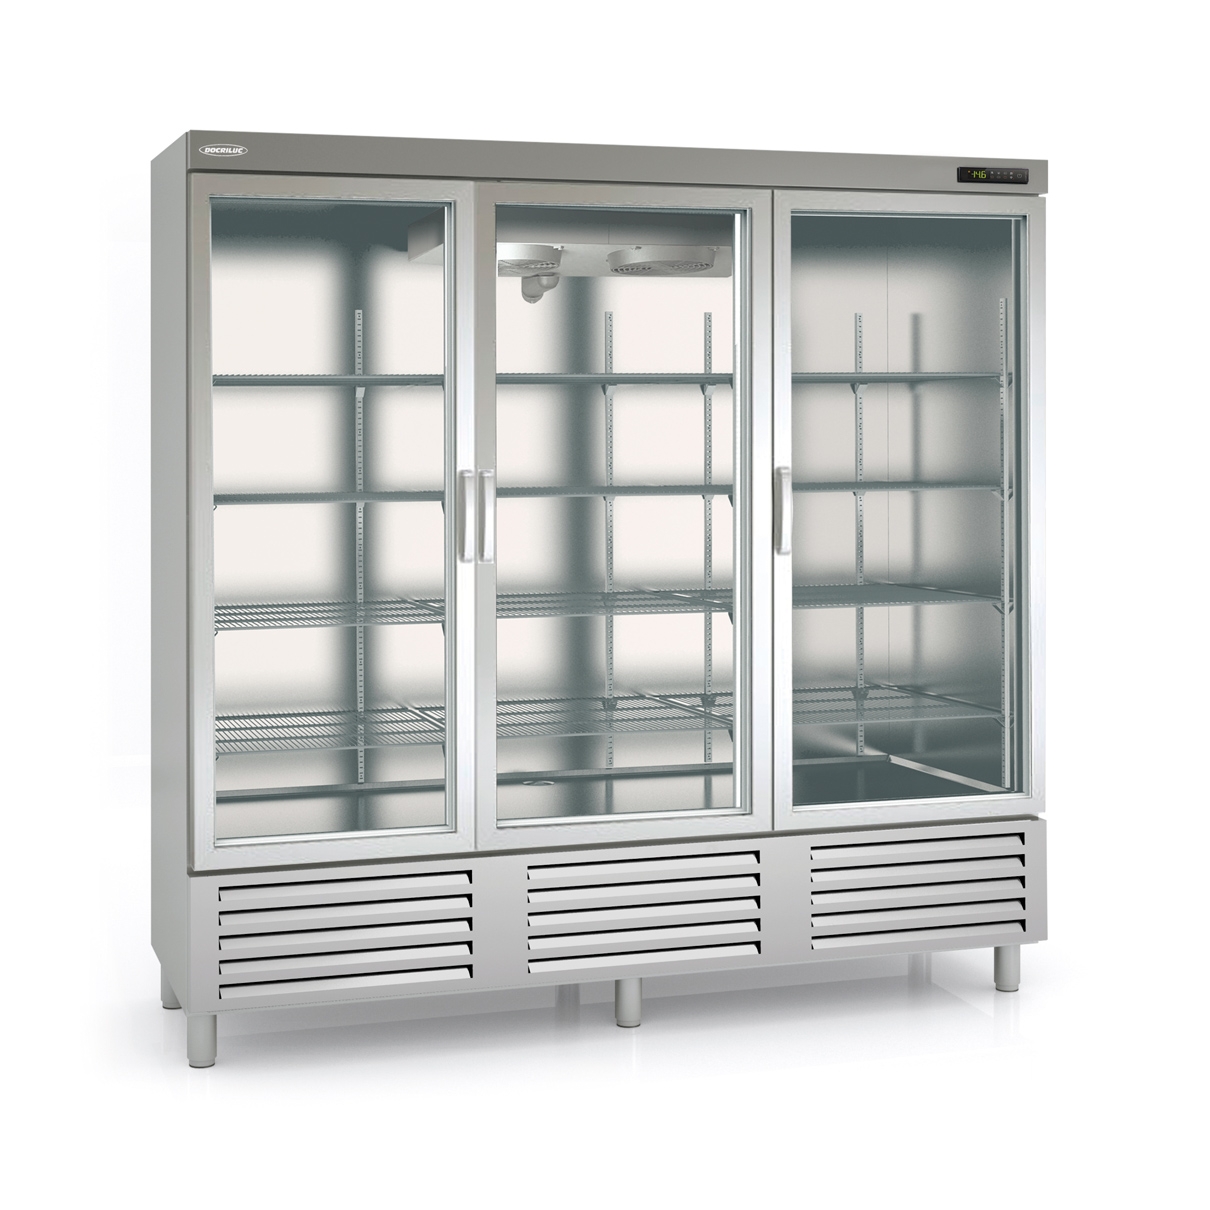 Snack Freezing Cabinet ACSV-210-3